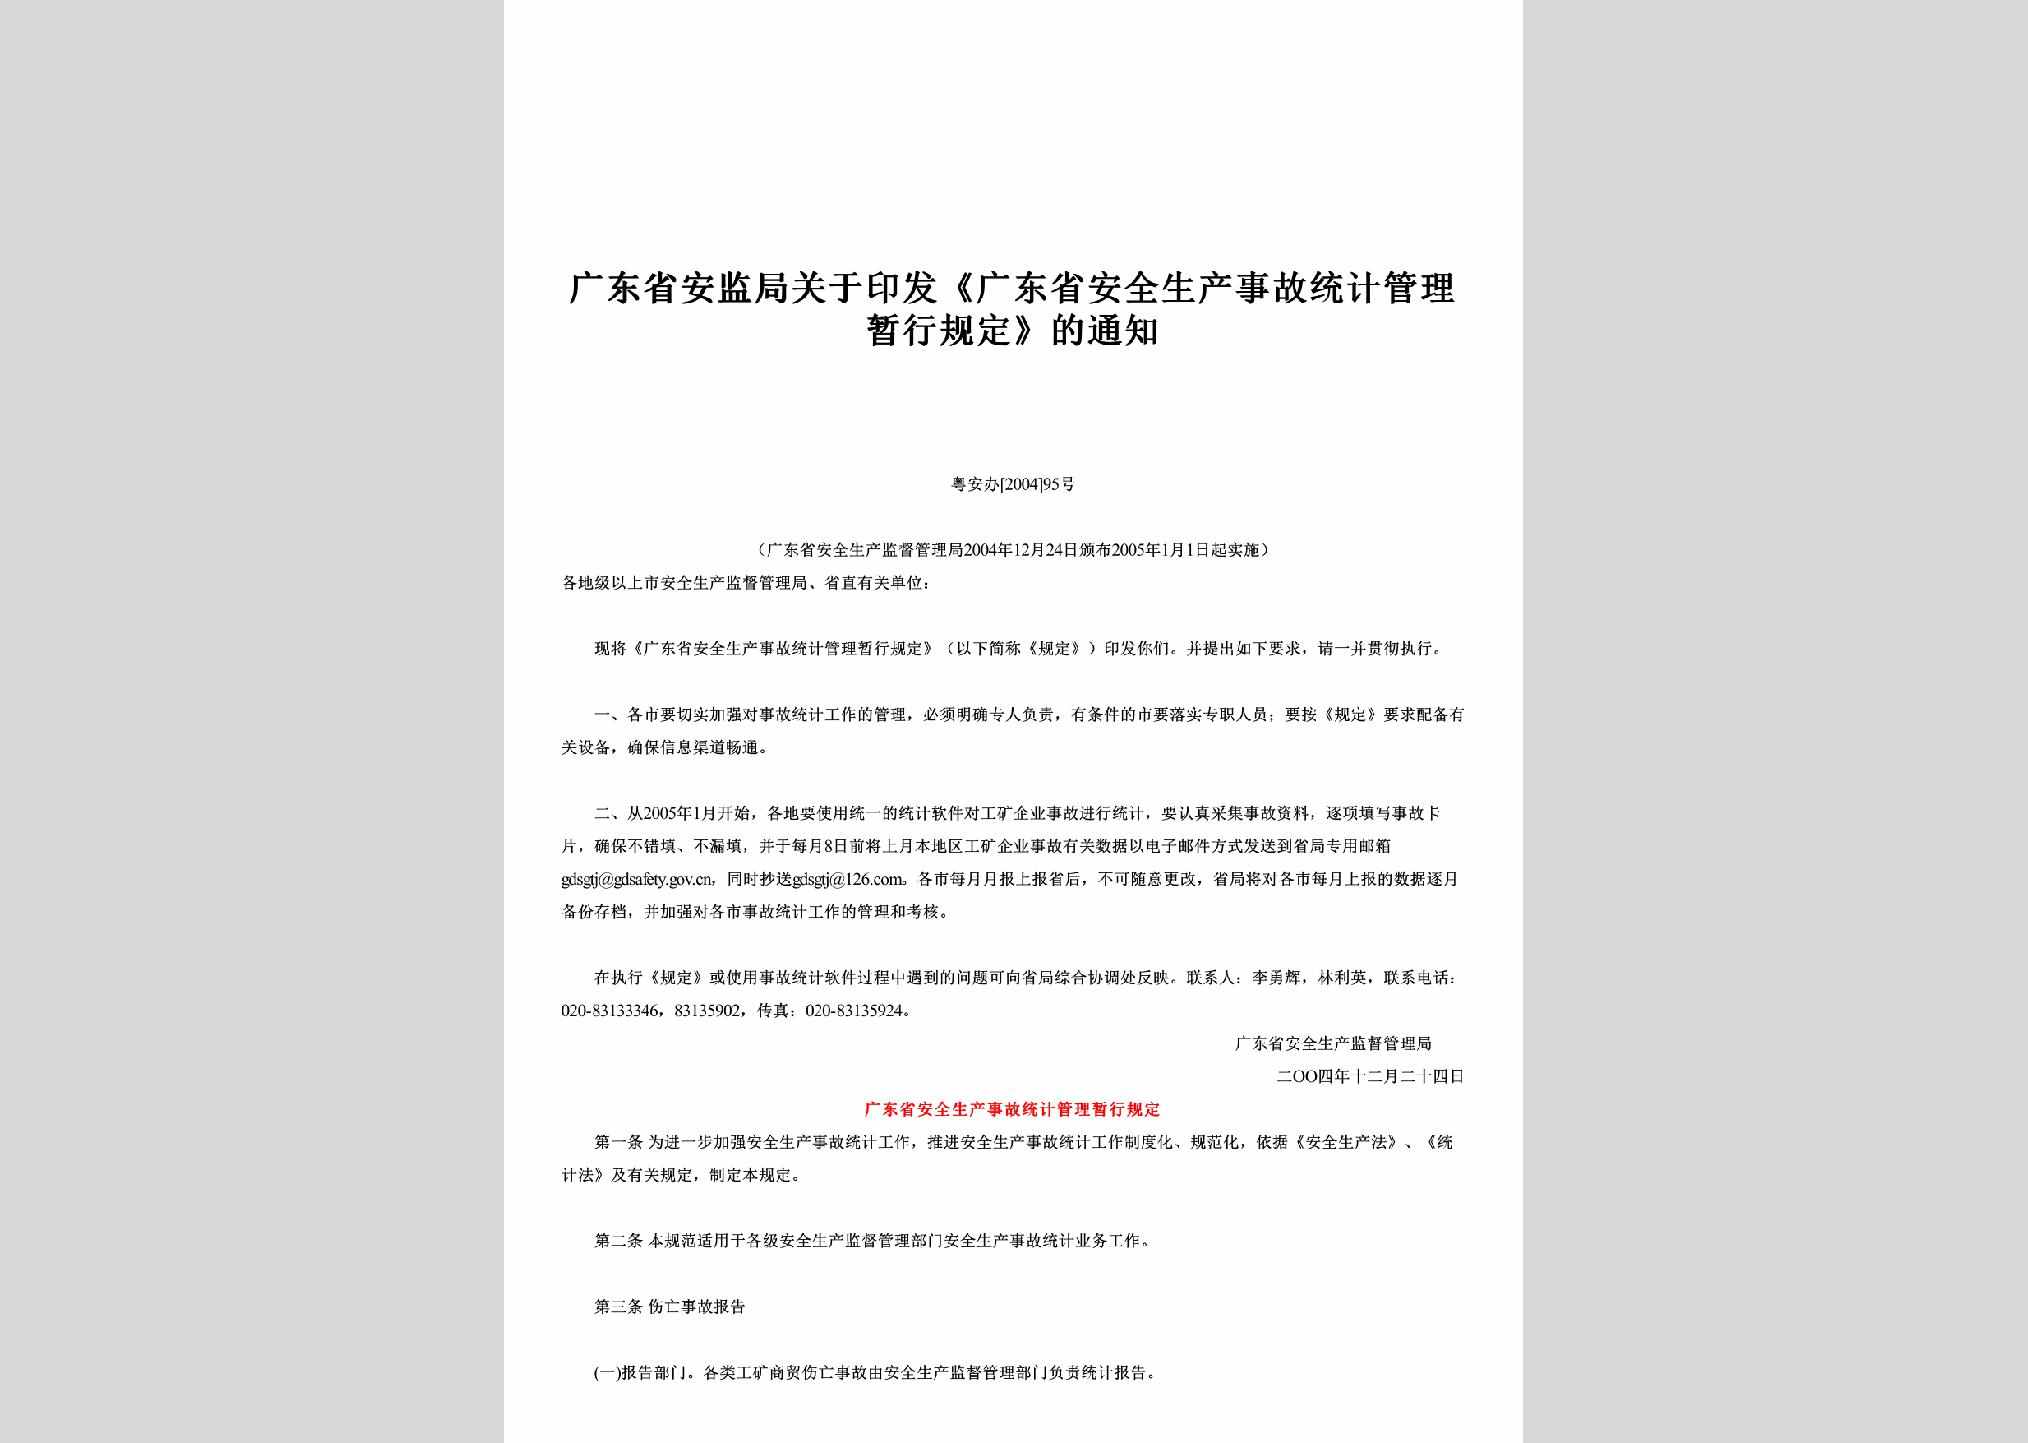 粤安办[2004]95号：关于印发《广东省安全生产事故统计管理暂行规定》的通知